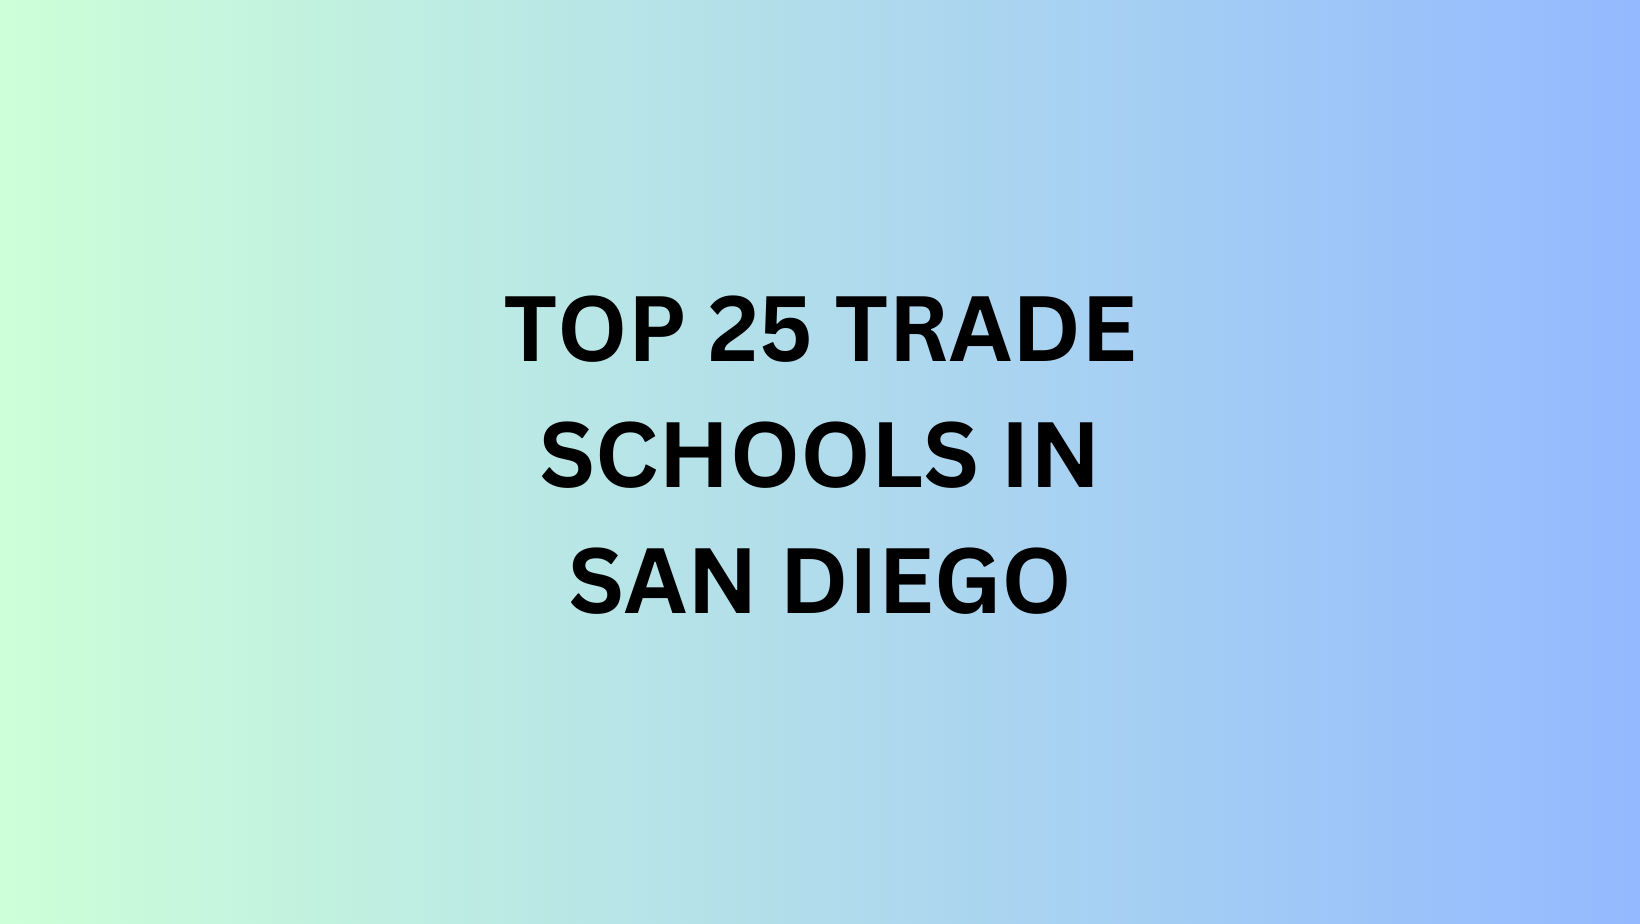 TOP 25 TRADE SCHOOLS IN SAN DIEGO